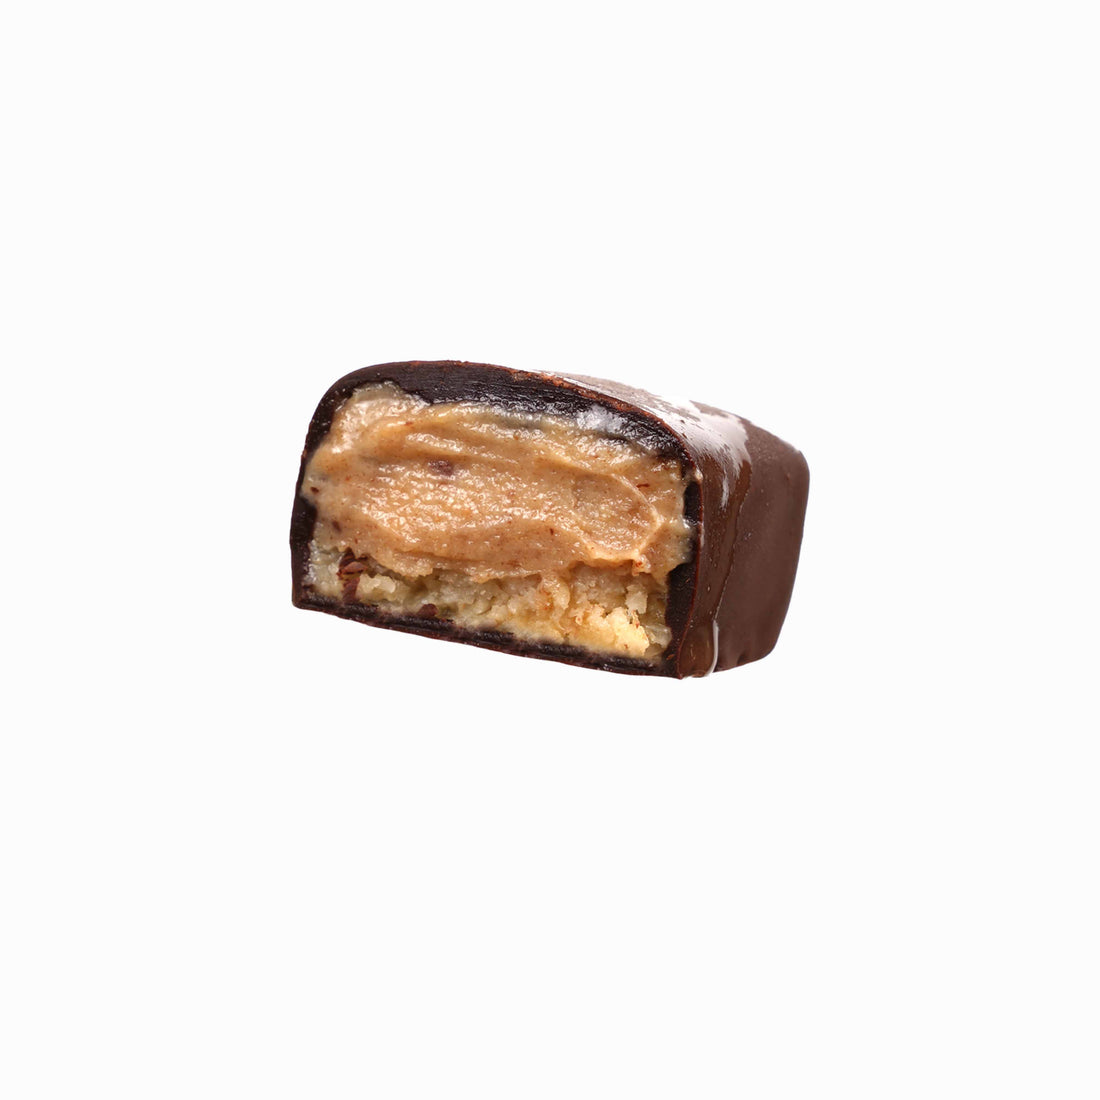 Bio Ice Cream Bars - Roasted Peanut (10er Box)